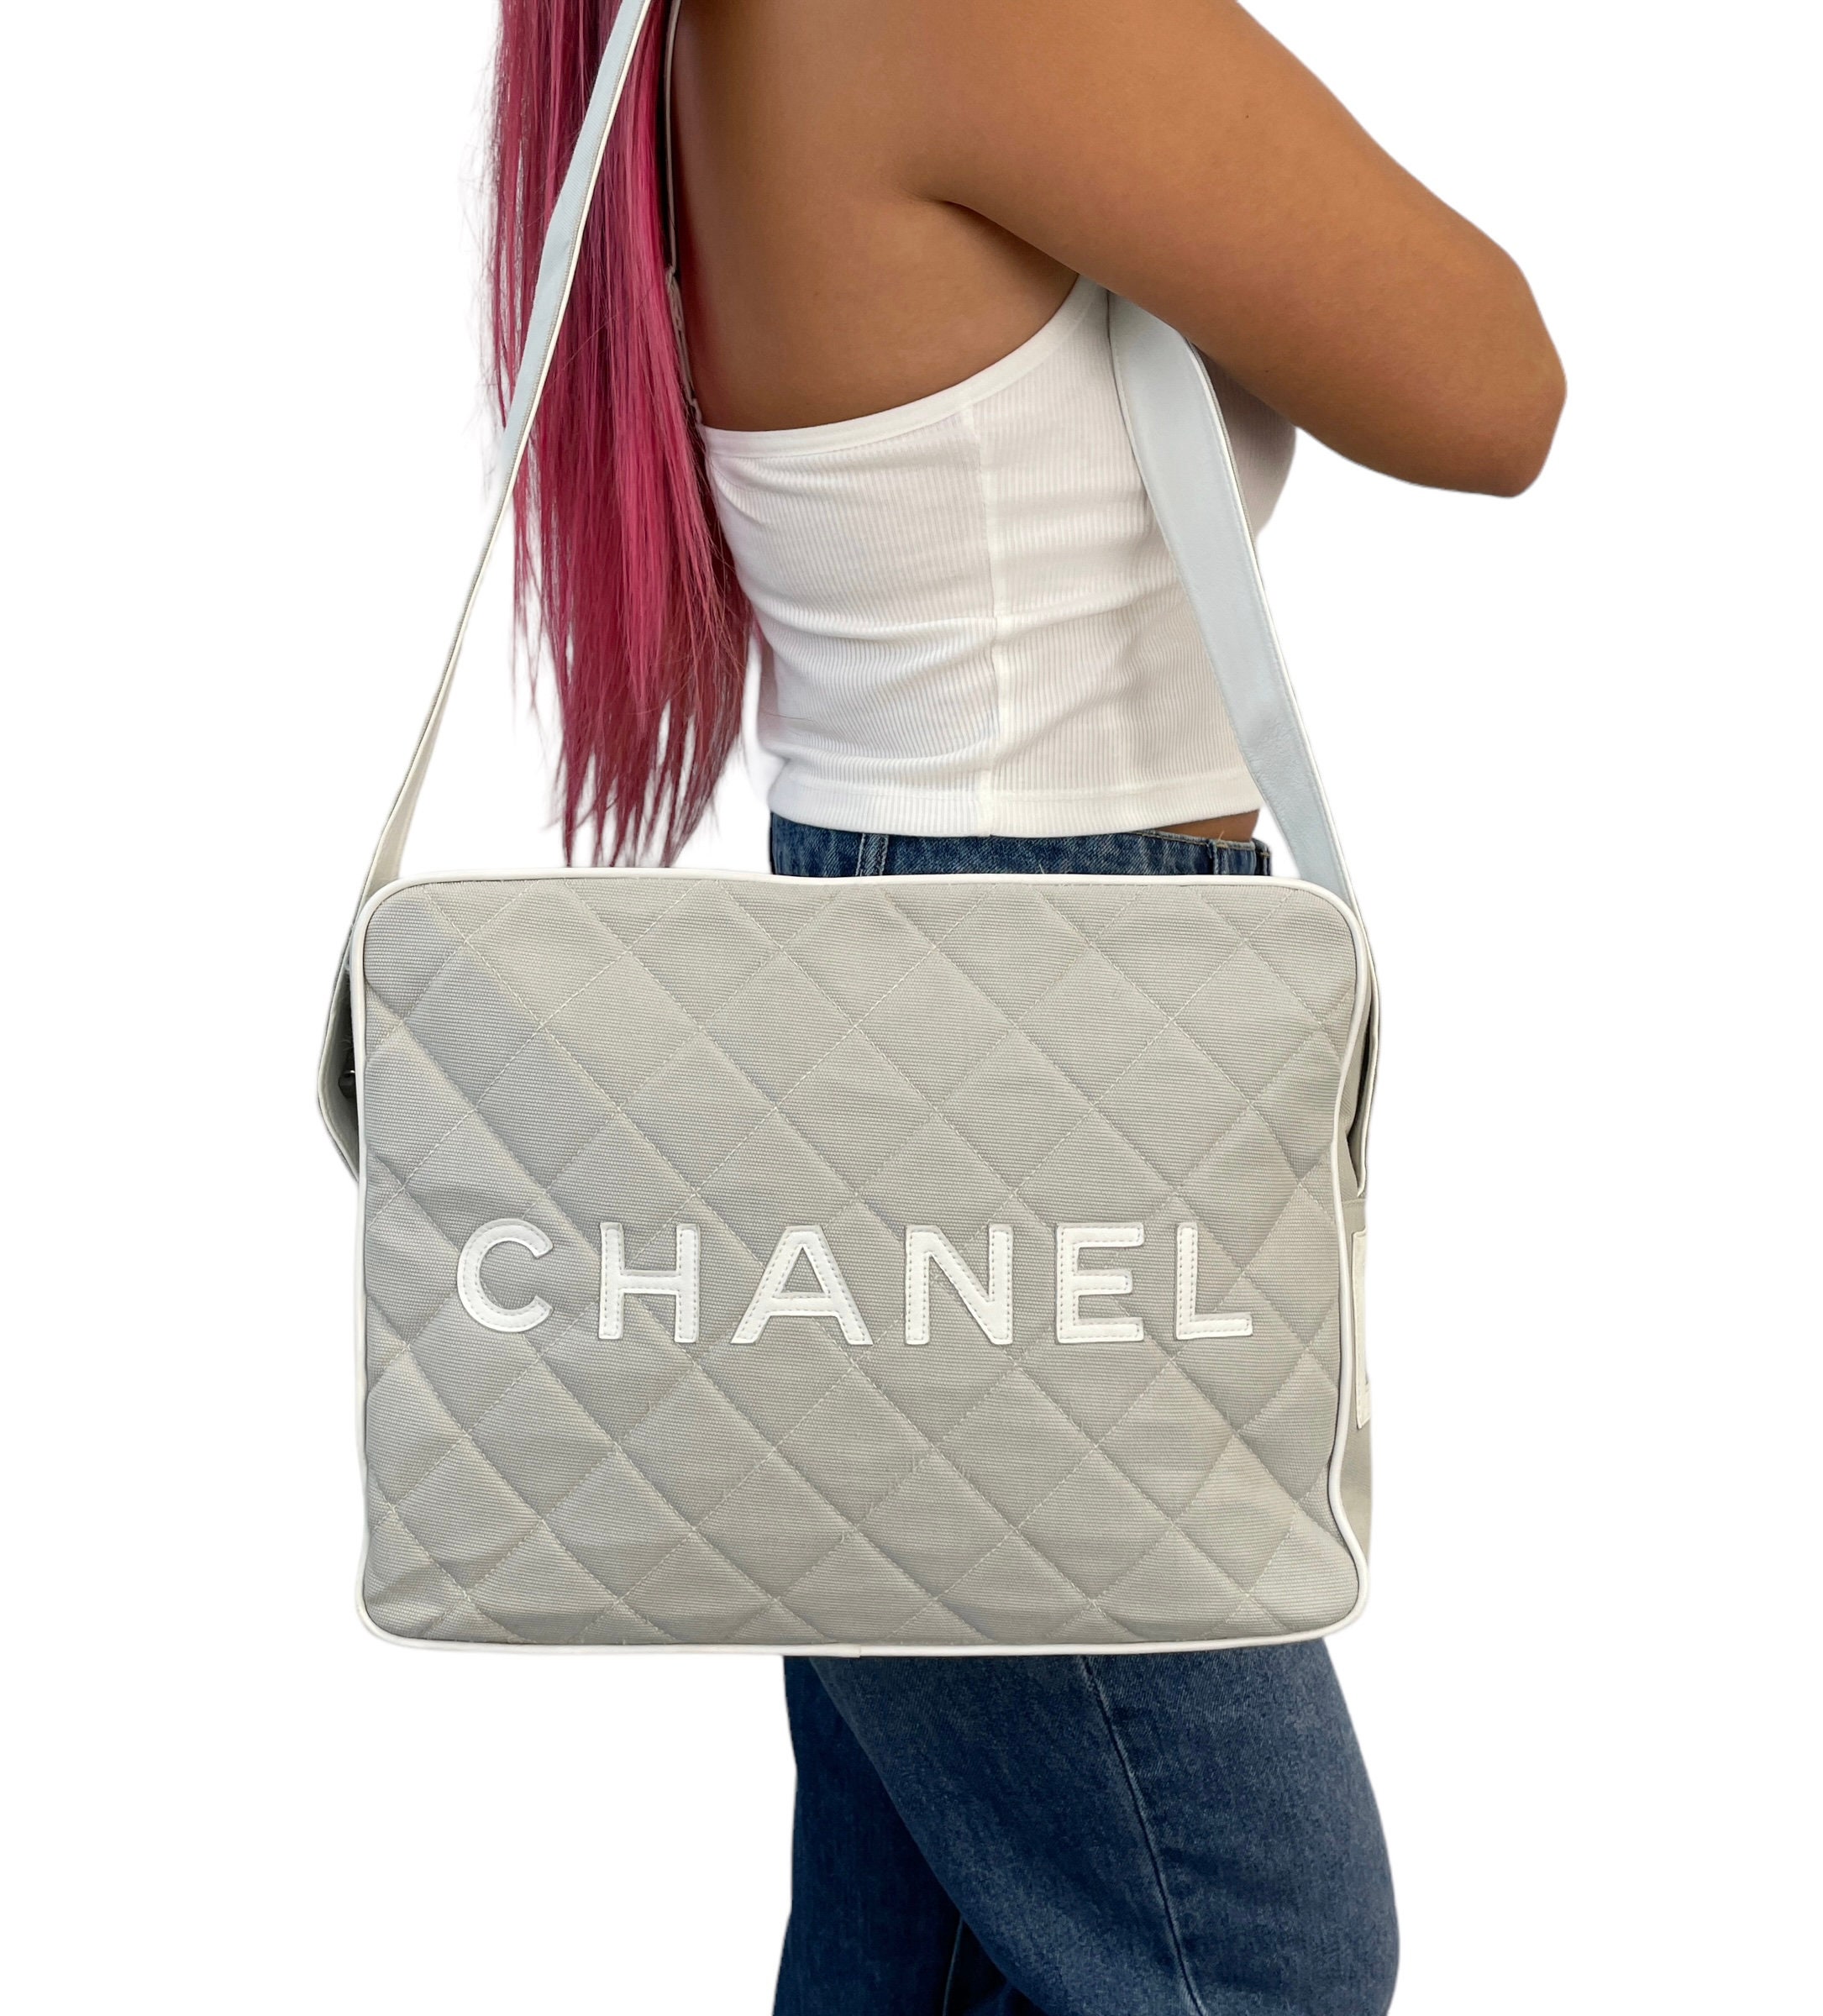 Chanel Logo Bag -  Sweden